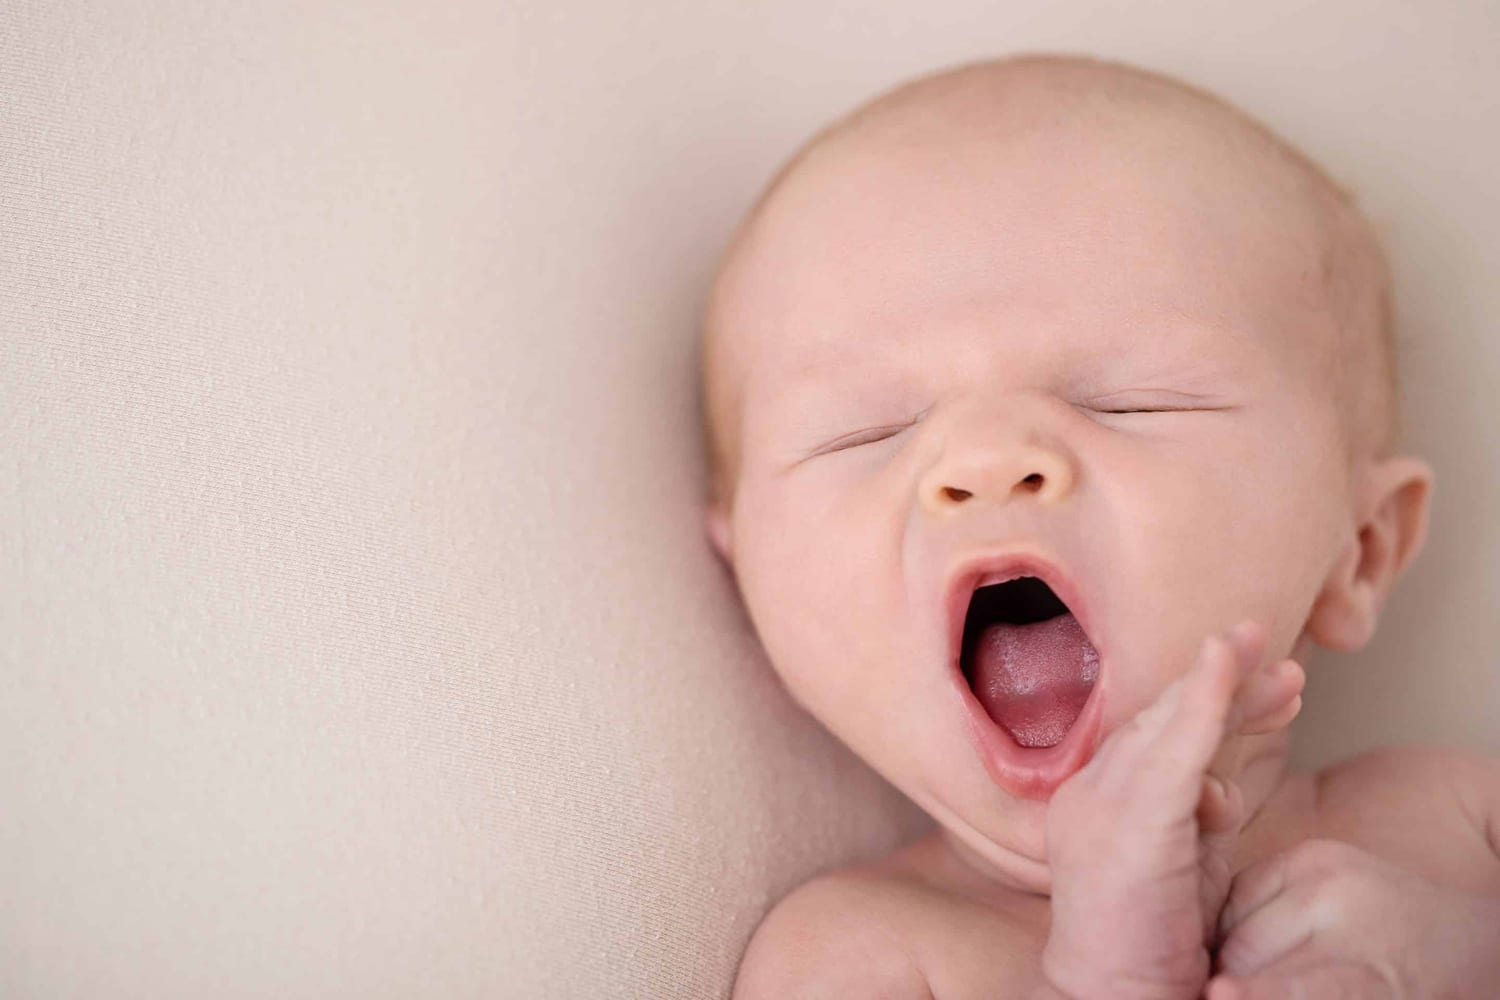 A newborn baby yawns.